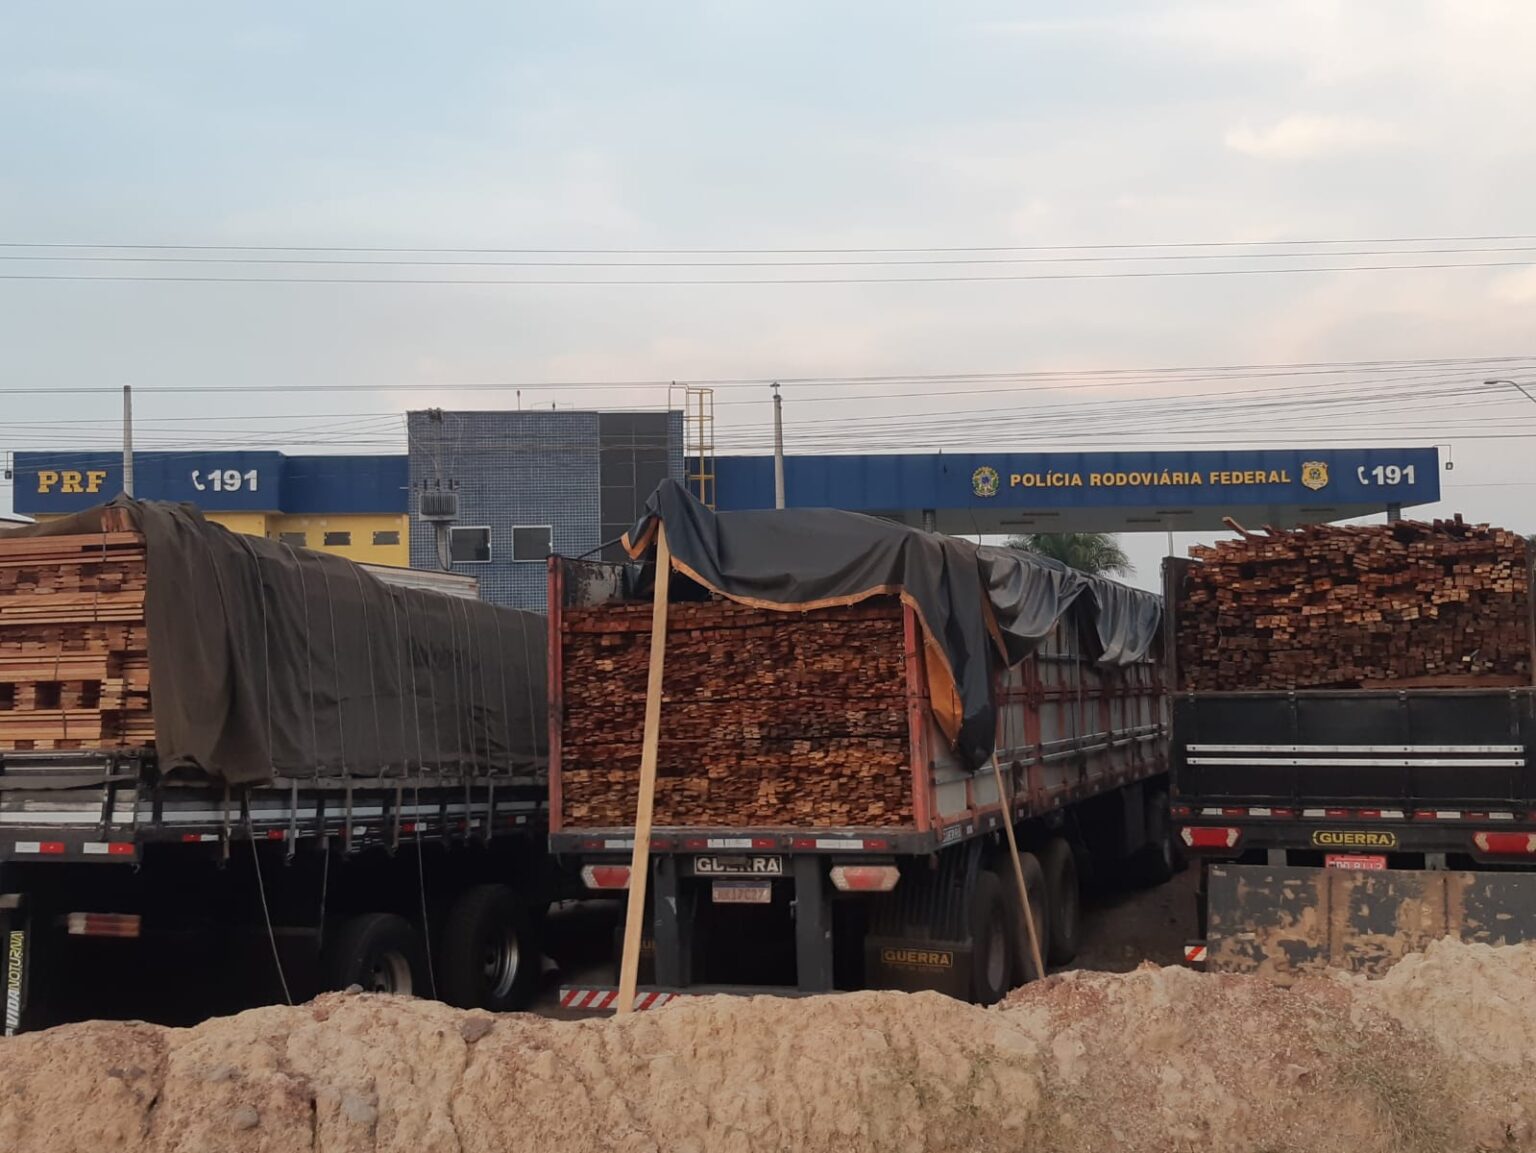 trucks carrying wood